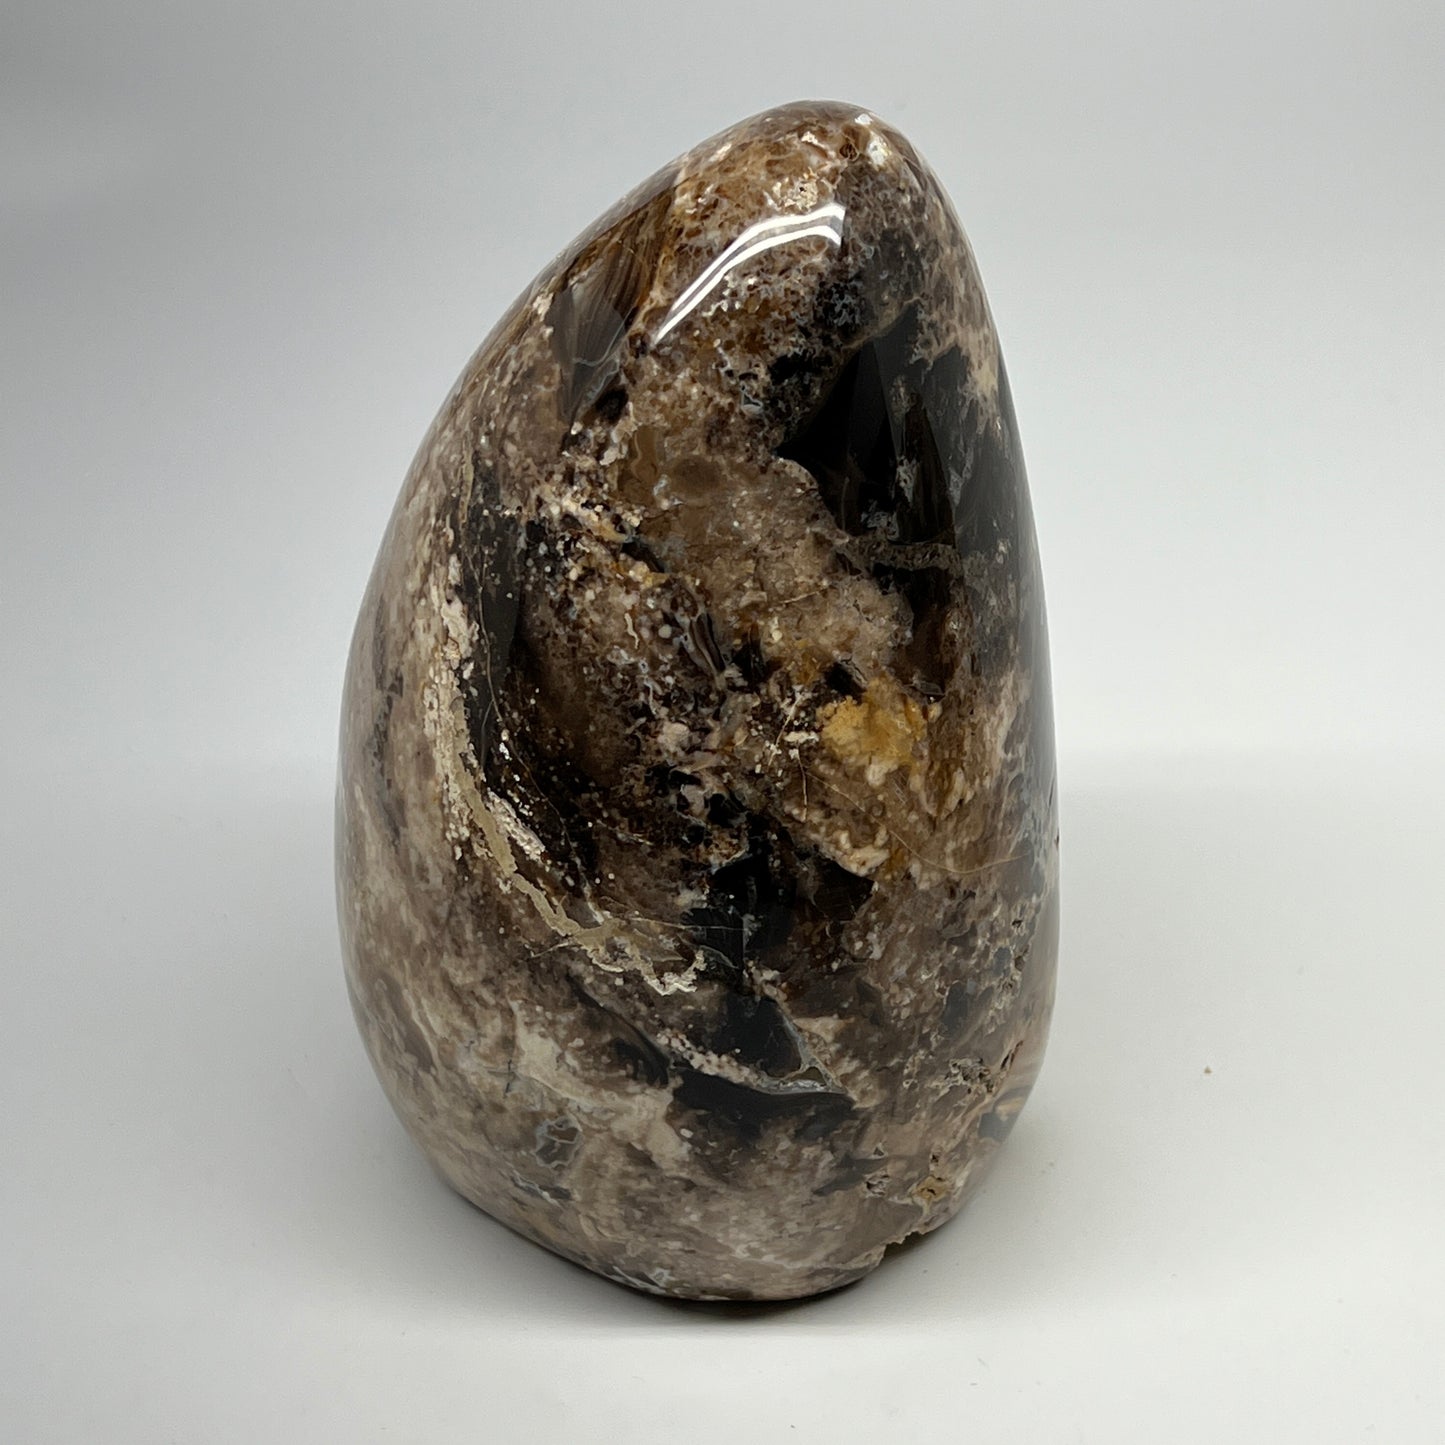 3640g,7"x6"x4.6" Black Opal Freeform Polished Gemstone @Madagascar,B21106